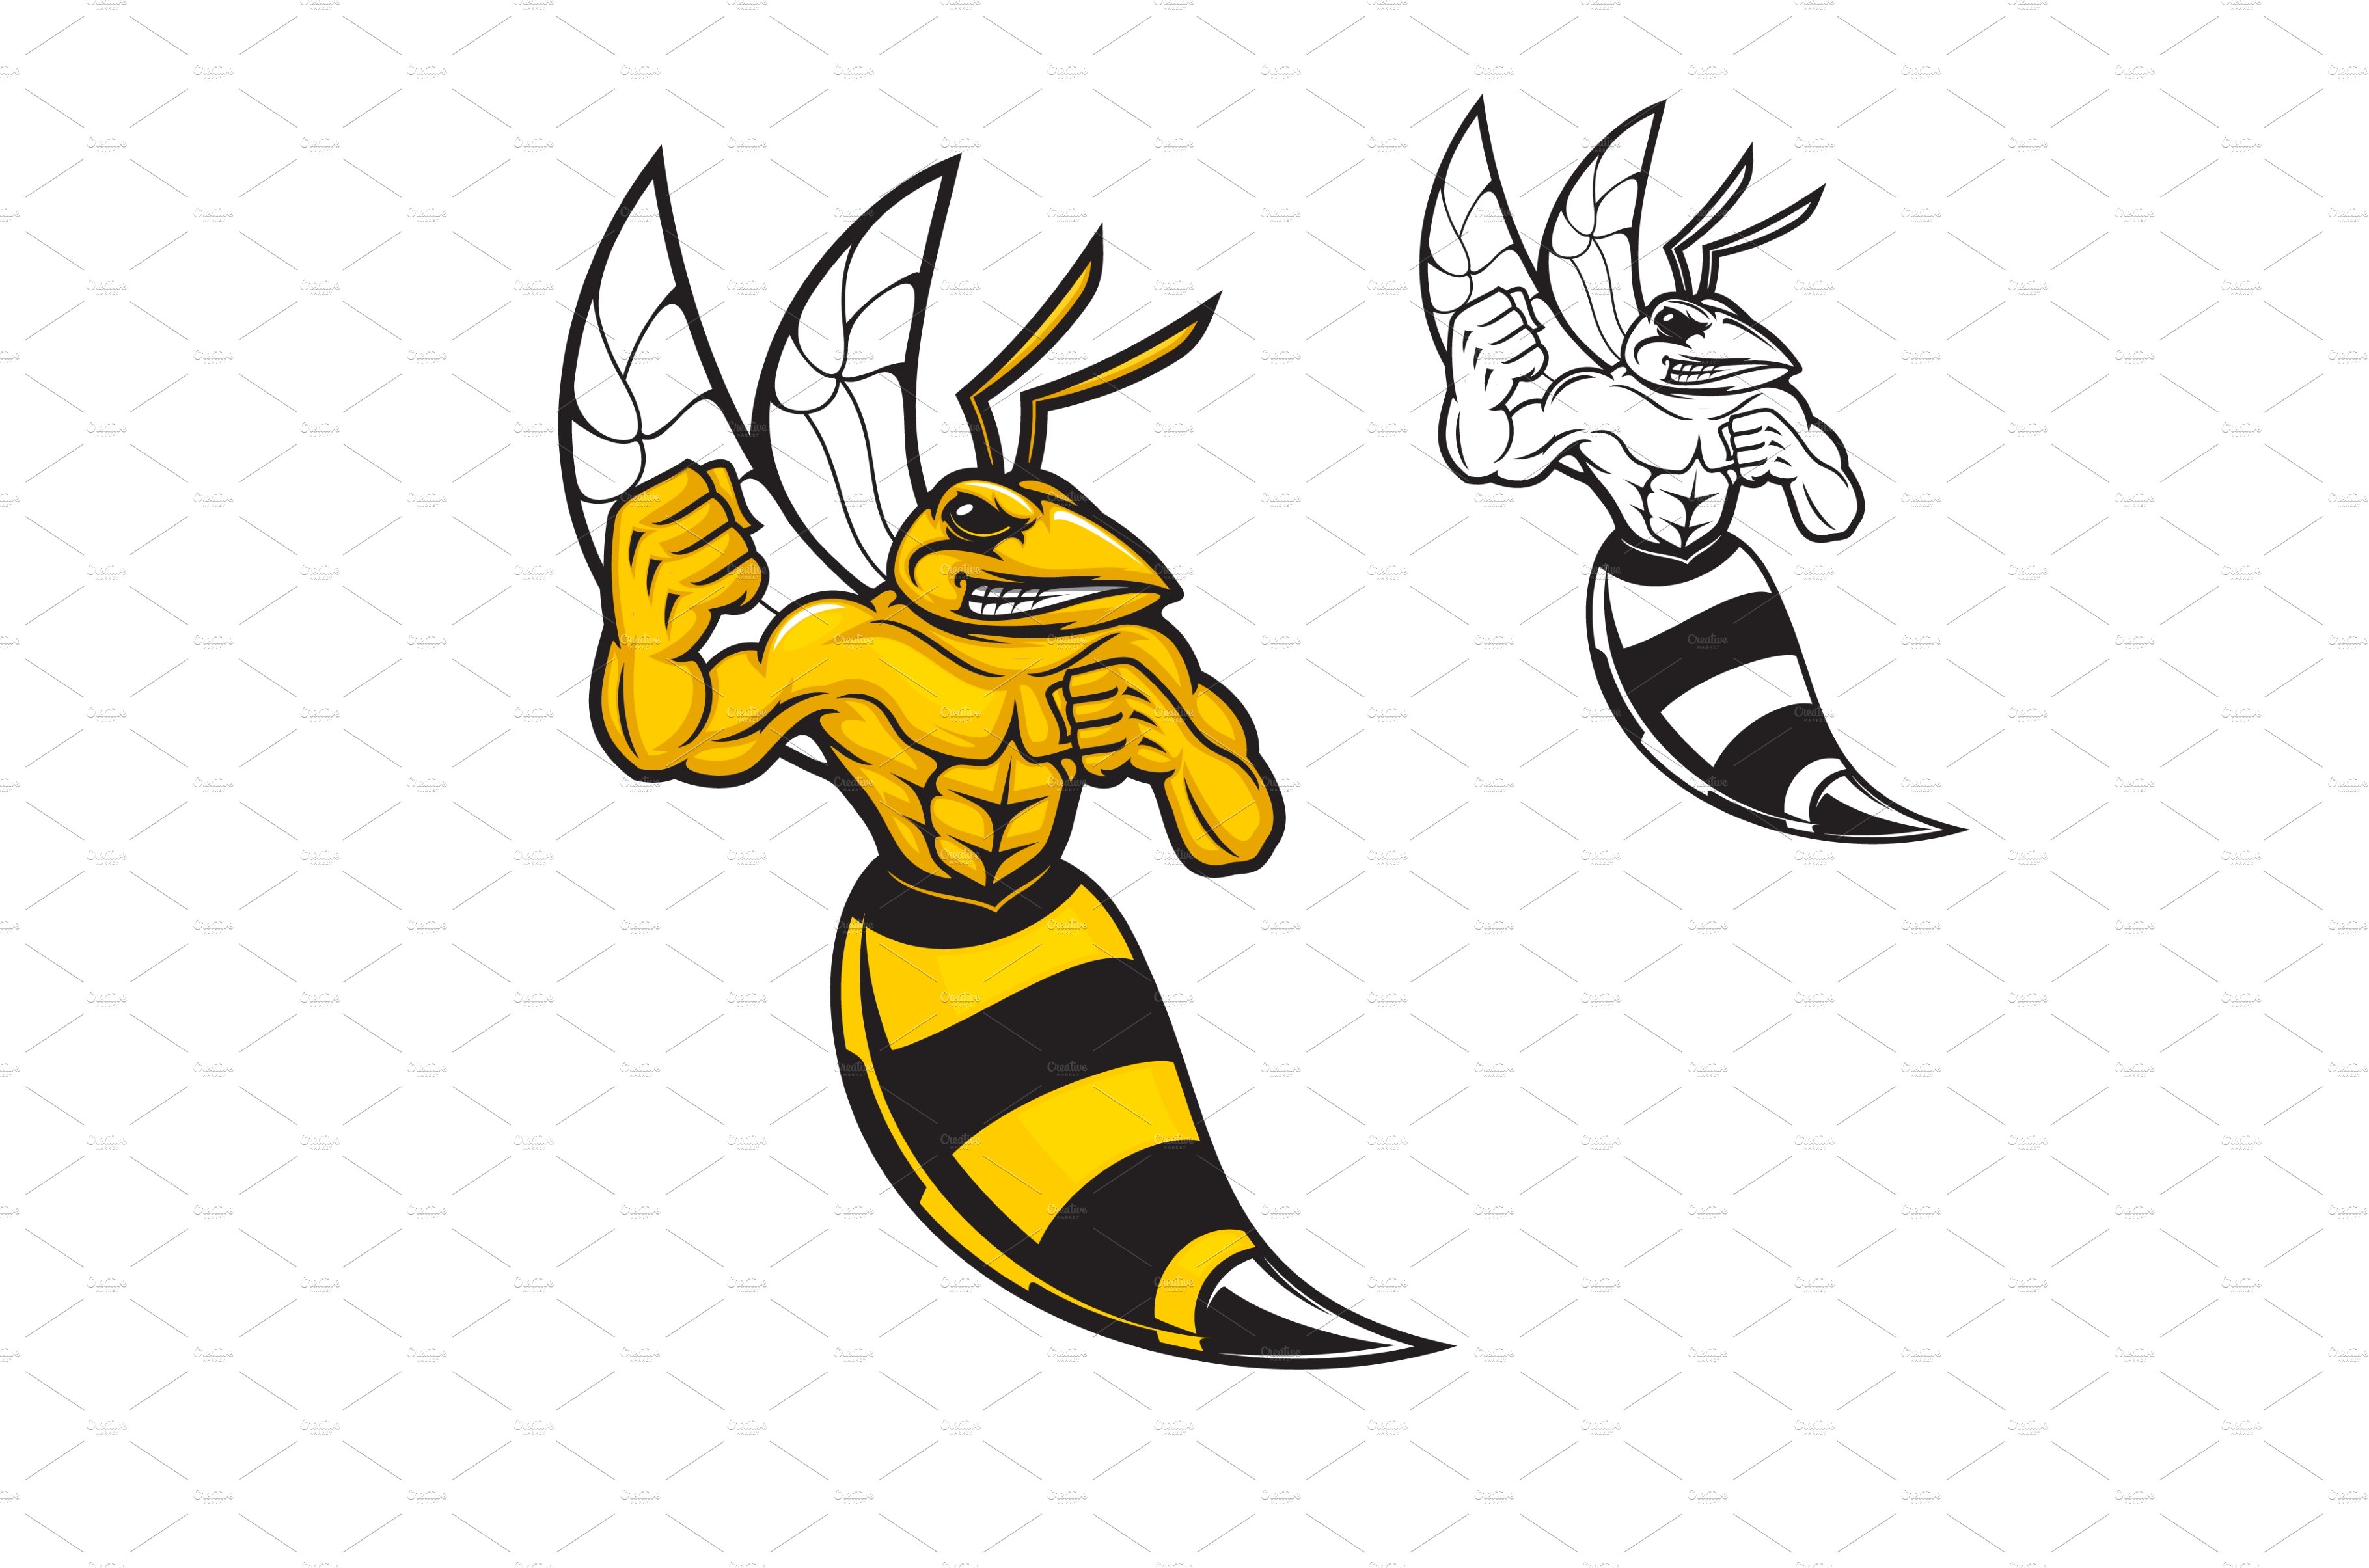 Hornet bee sport team mascot cover image.